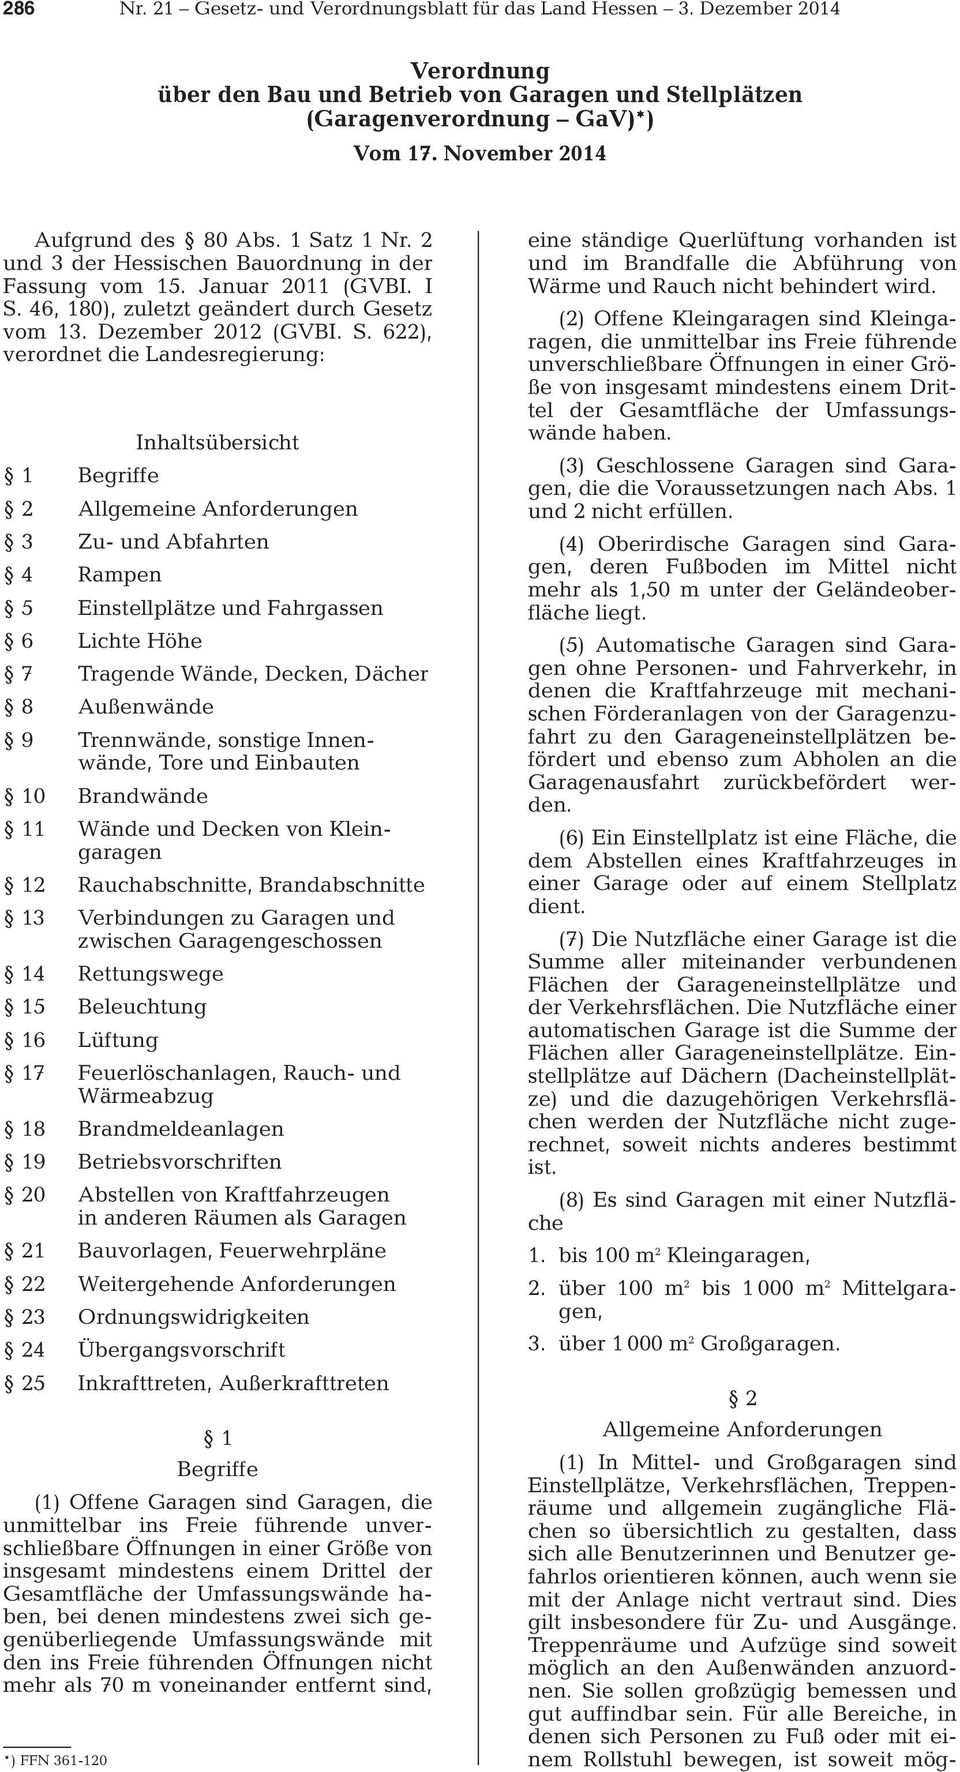 tz 1 Nr. 2 und 3 der Hessischen Bauordnung in der Fassung vom 15. Januar 2011 (GVBI. I S.